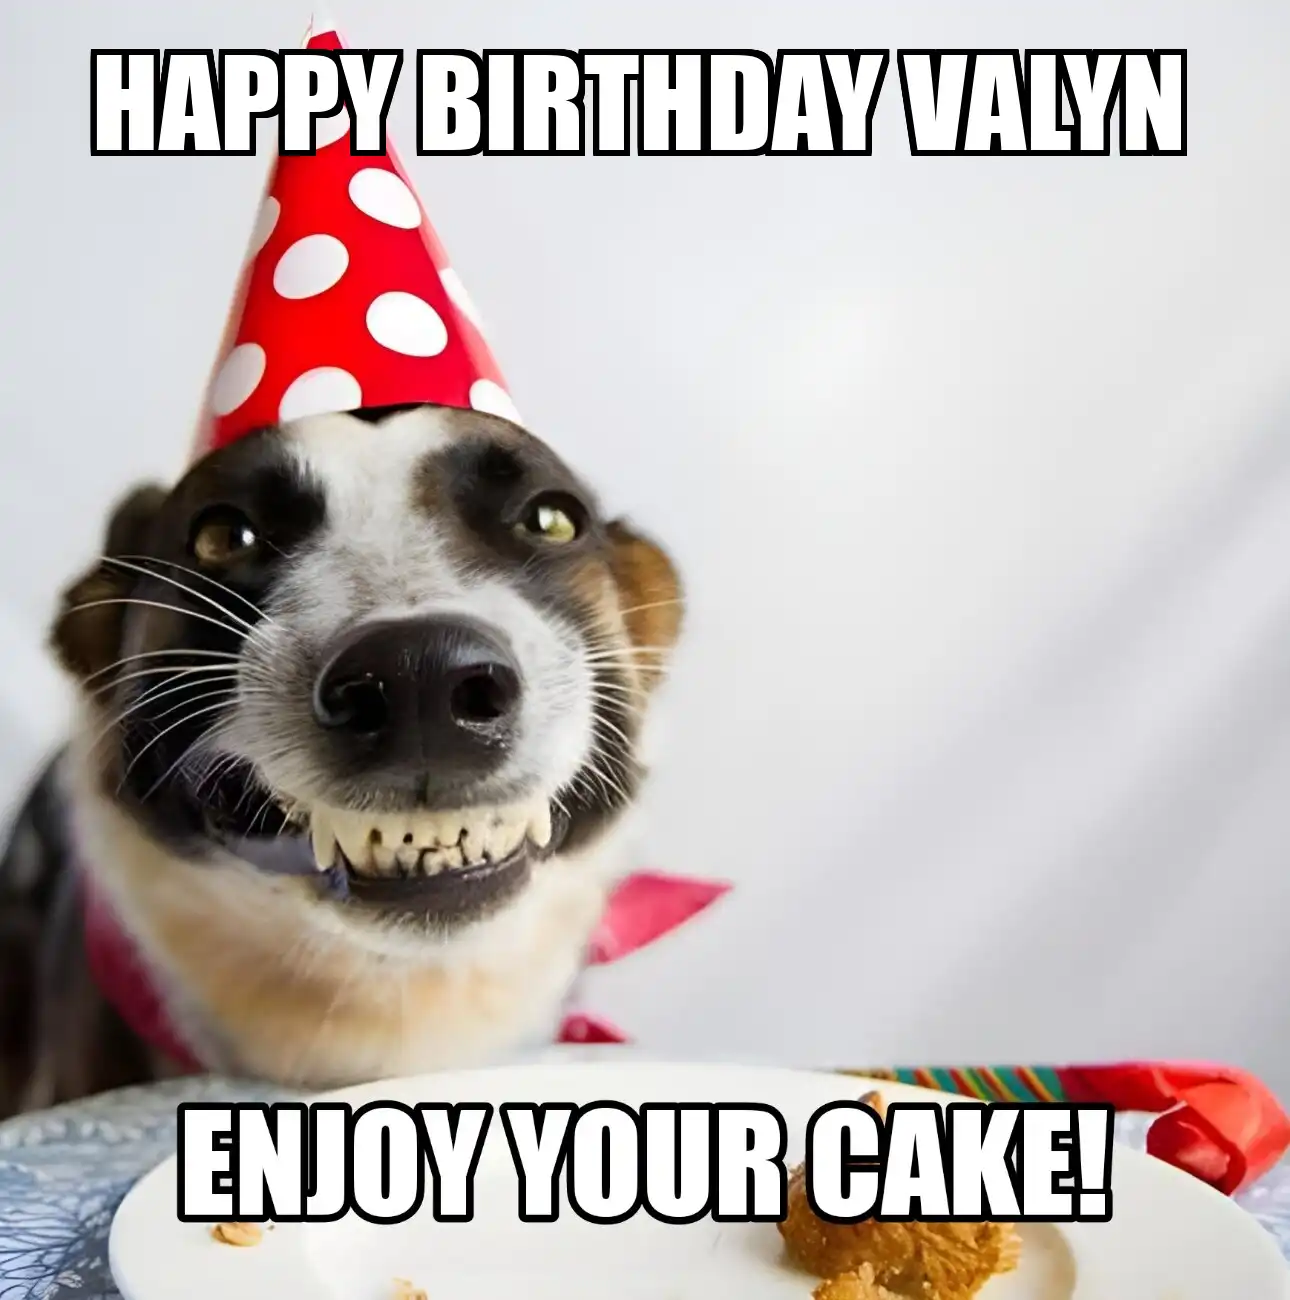 Happy Birthday Valyn Enjoy Your Cake Dog Meme